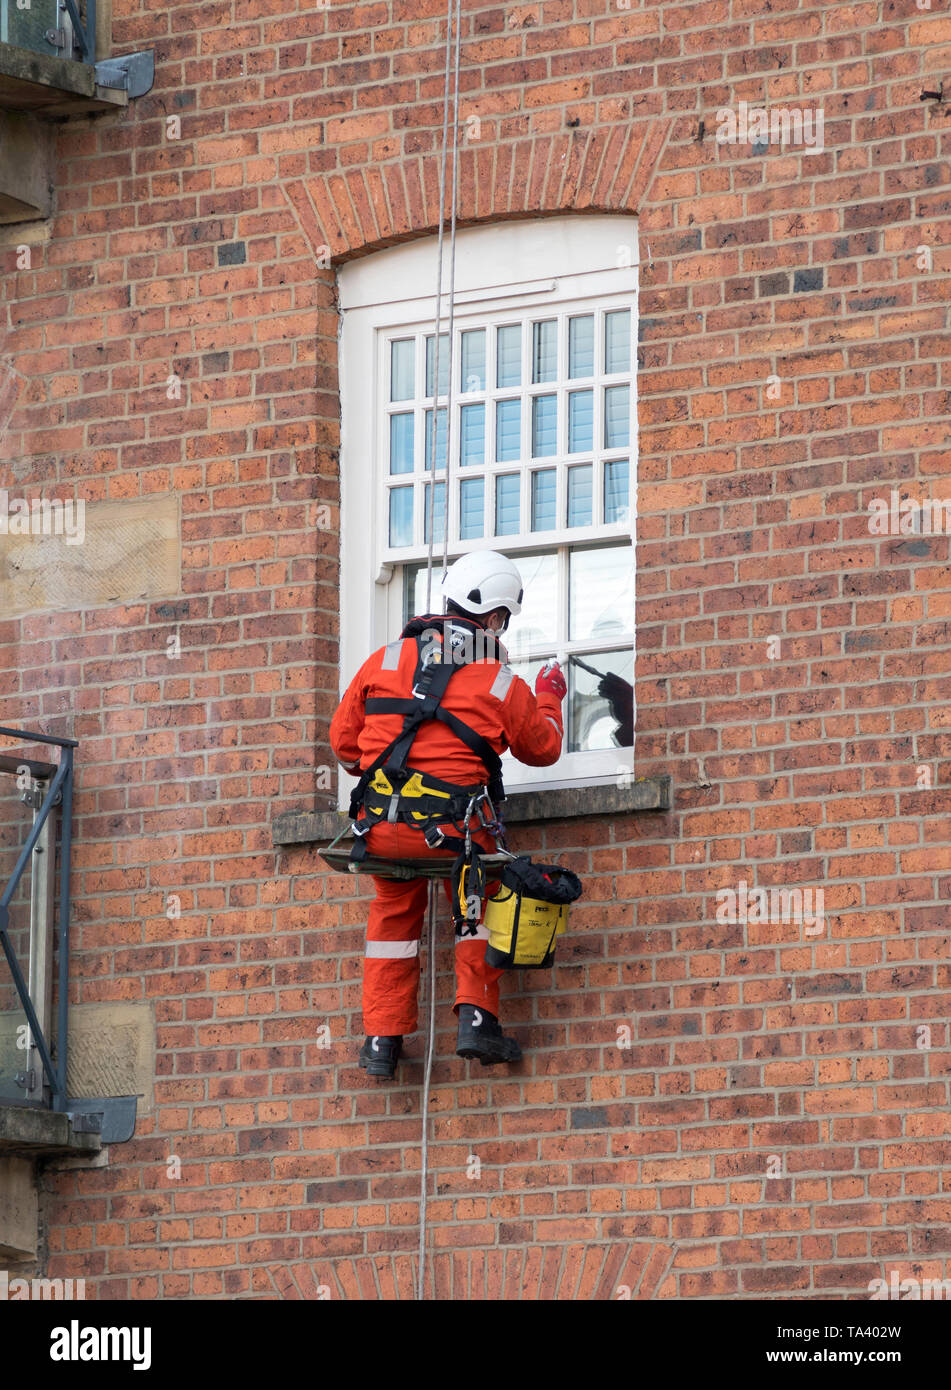 À l'aide de la descente en rappel ou ouvrier accès sur corde pour peindre une fenêtre dans un appartement à Leeds, Yorkshire, Angleterre, Royaume-Uni Banque D'Images